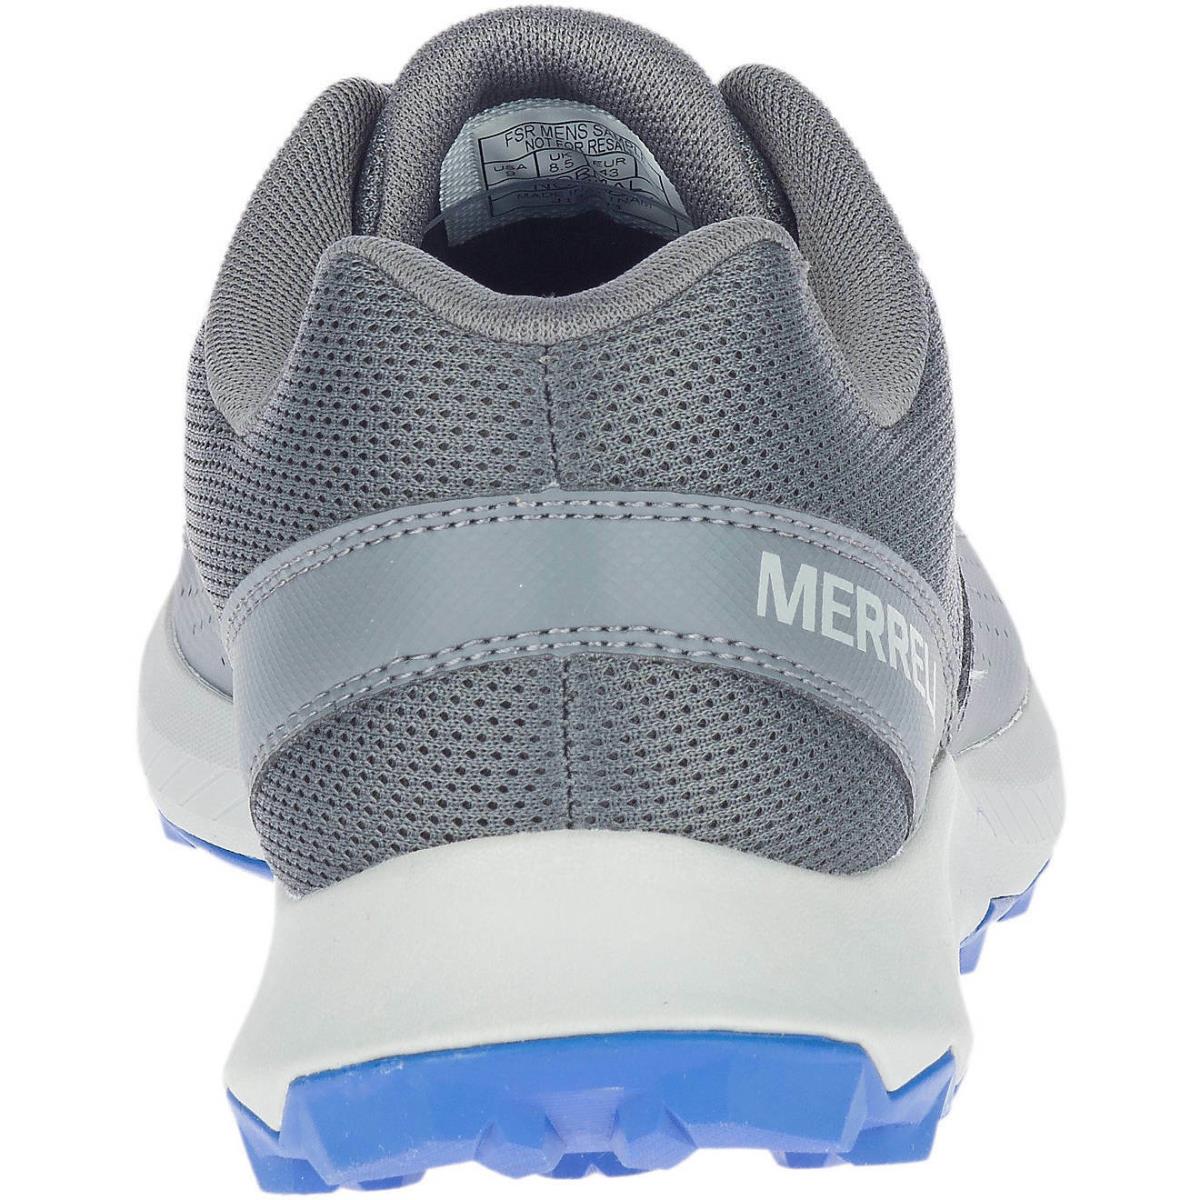 Merrell shoes MERU - ROCK/COBALT 3